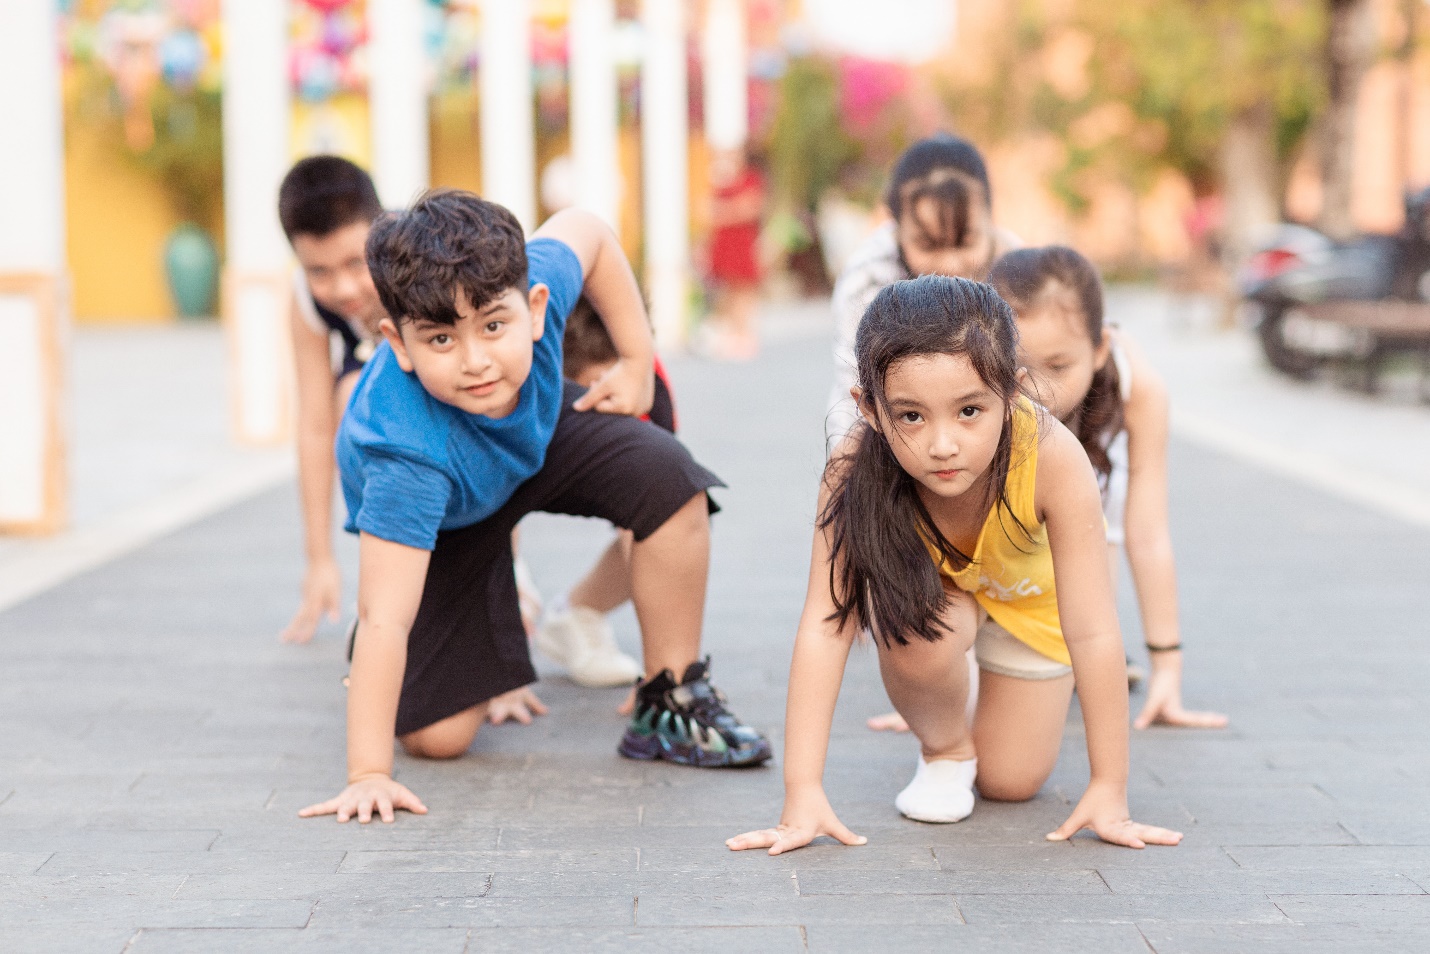 Chạy bộ giúp trẻ phát triển toàn diện về thể chất và tinh thần: Tăng mật độ xương, cải thiện khả năng học tập và hình thành lối sống tích cực - Ảnh 2.